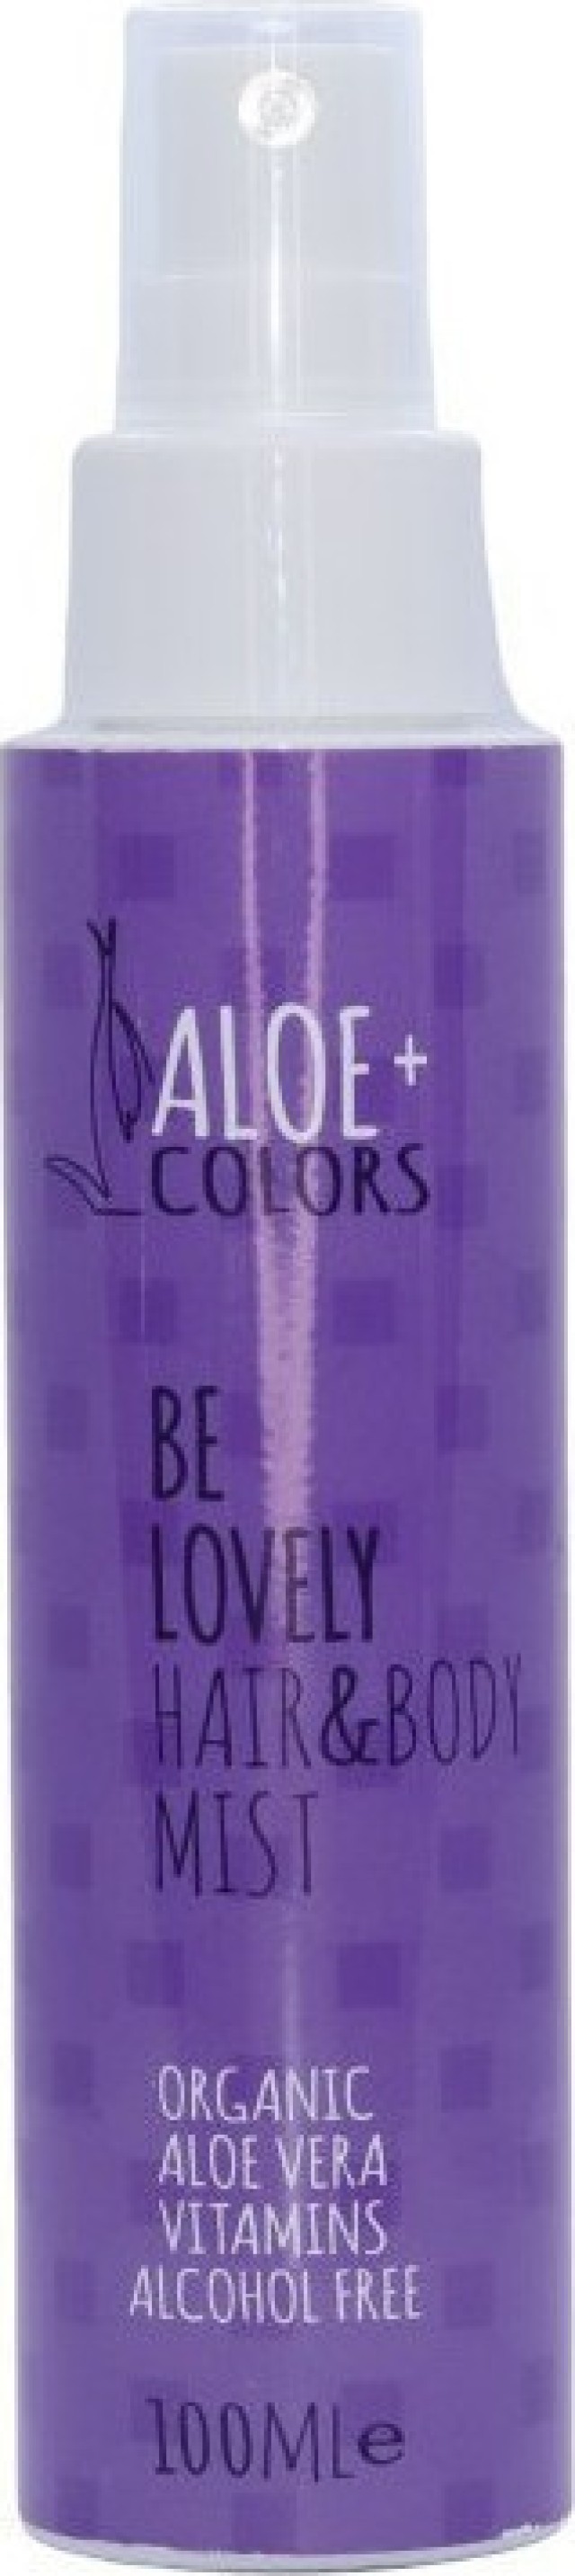 Aloe+ Colors Be Lovely Hair & Body Mist Ενυδατικό Σπρέι Μαλλιών & Σώματος, 100ml